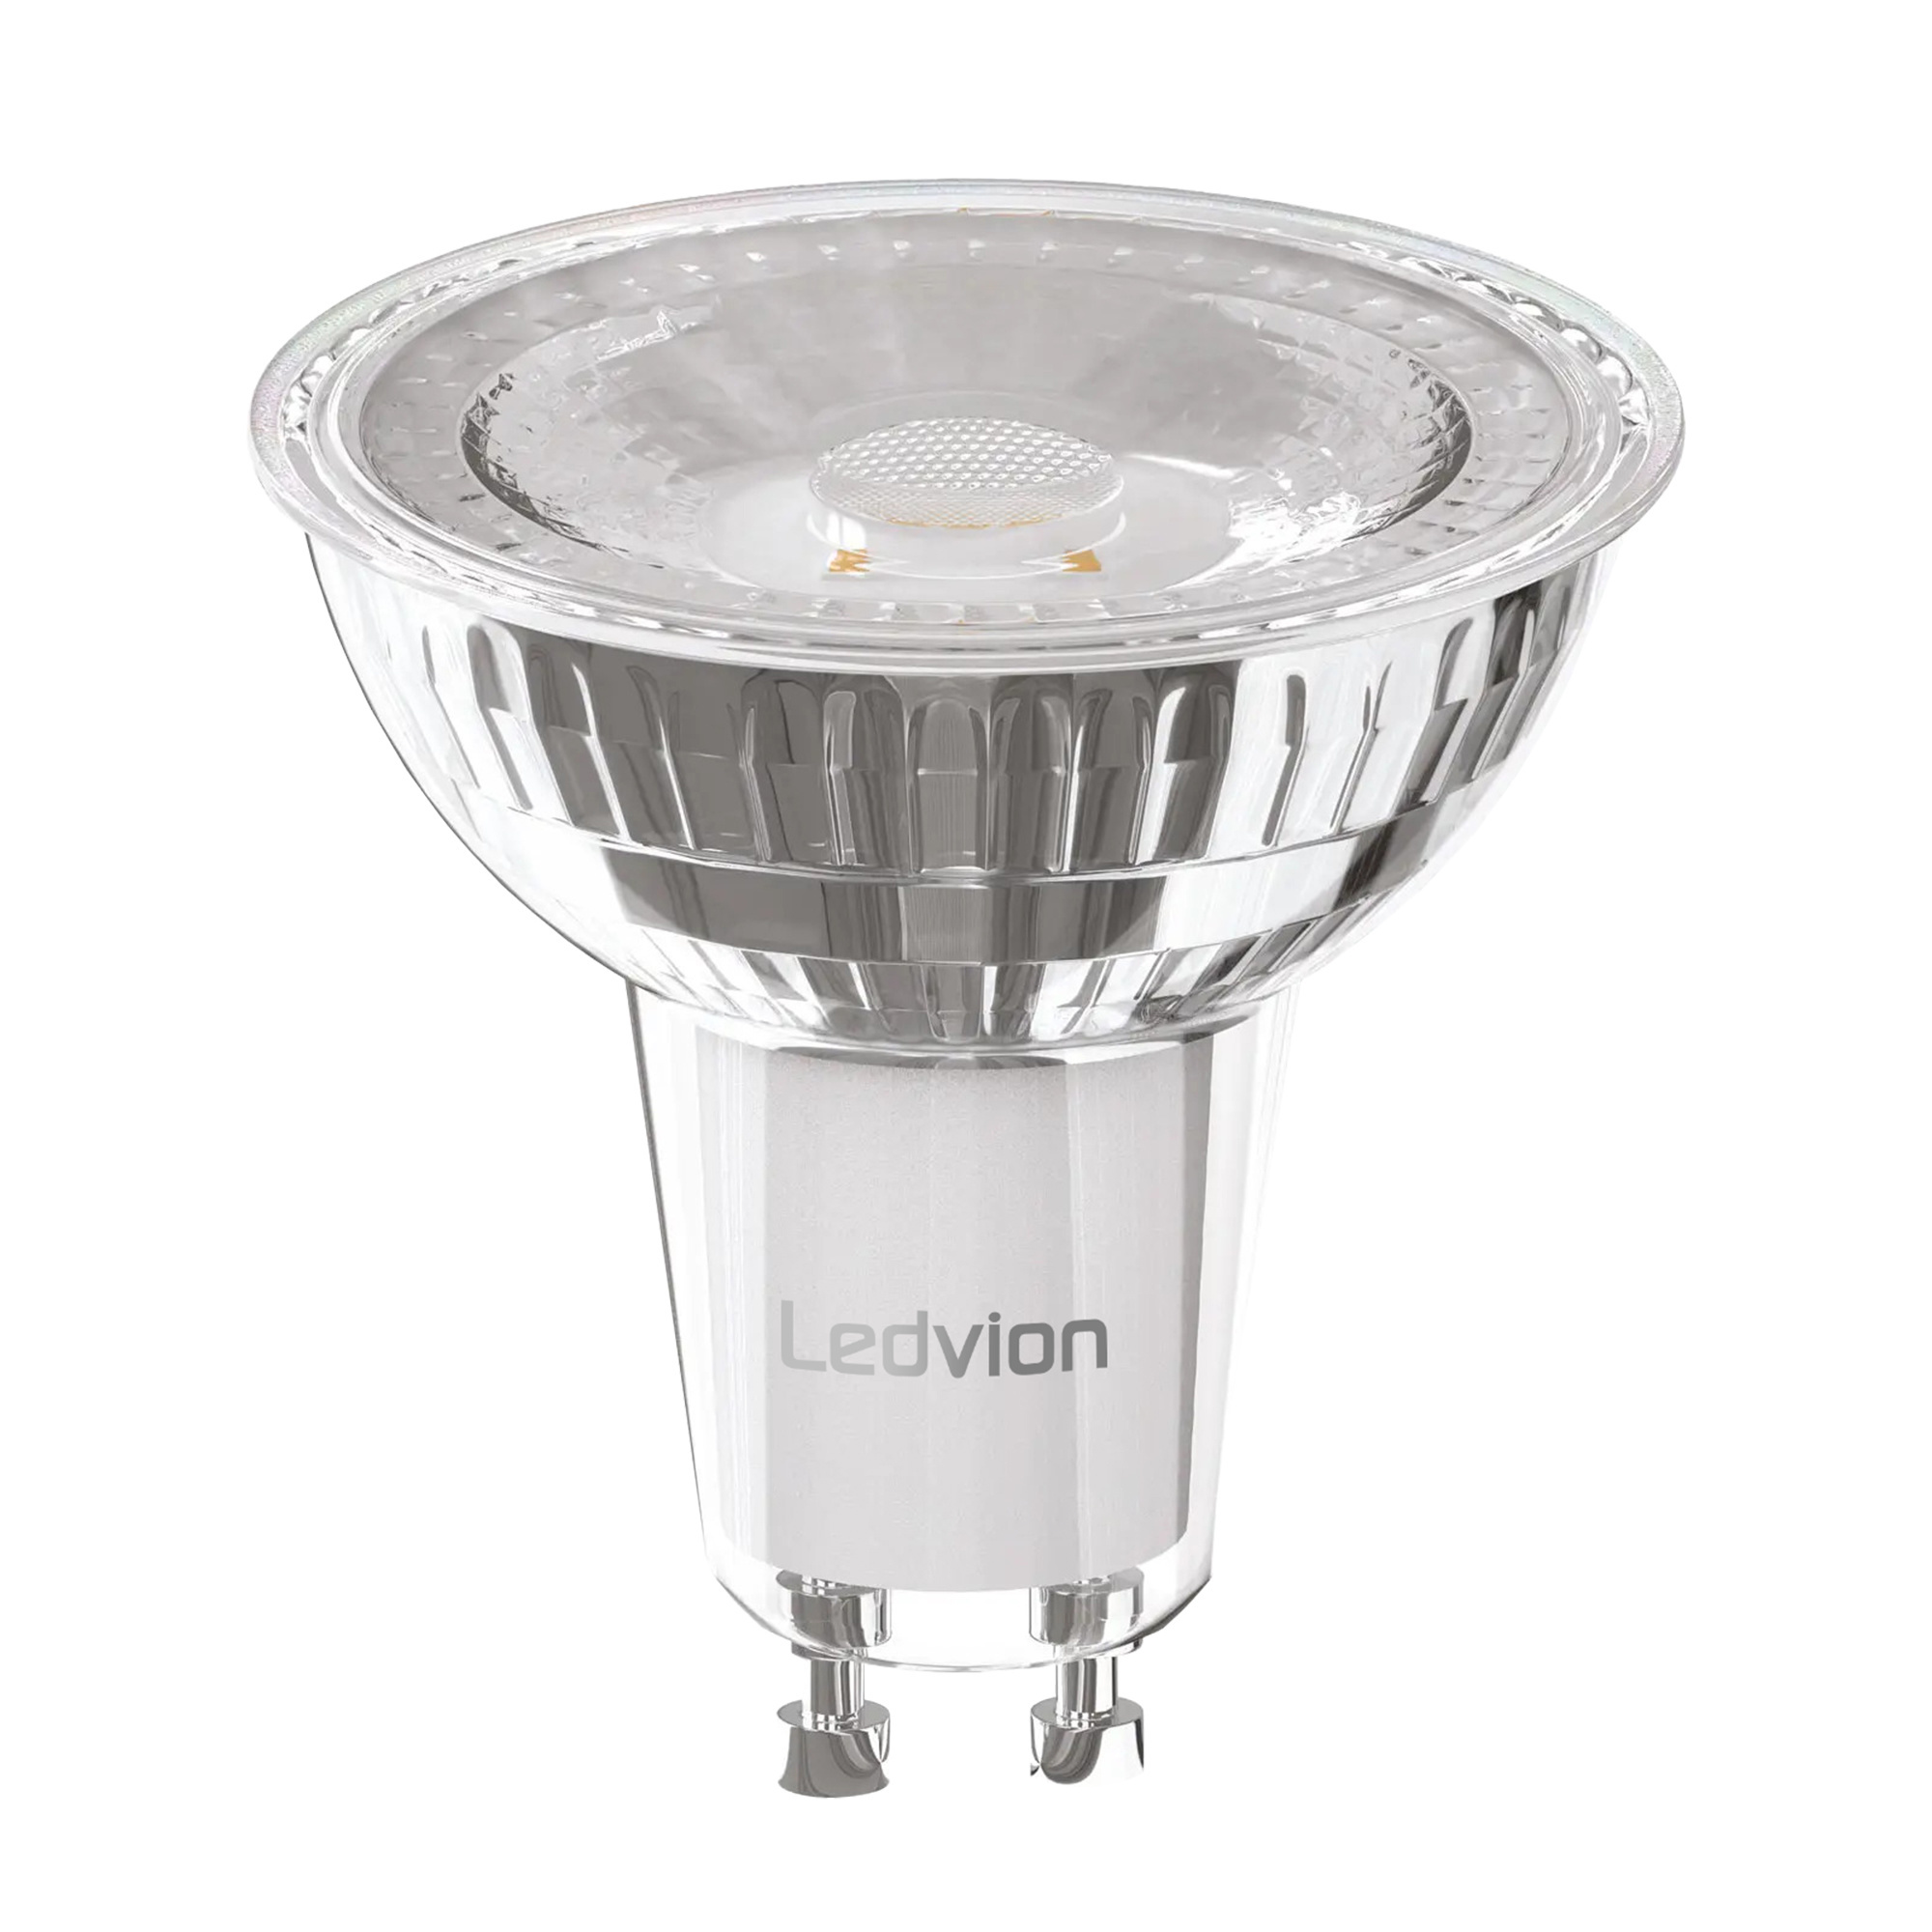 Ampoule LED Ledvion GU10 - 4.5W - 2700K - 345 Lumen - Verre - Lampesonline